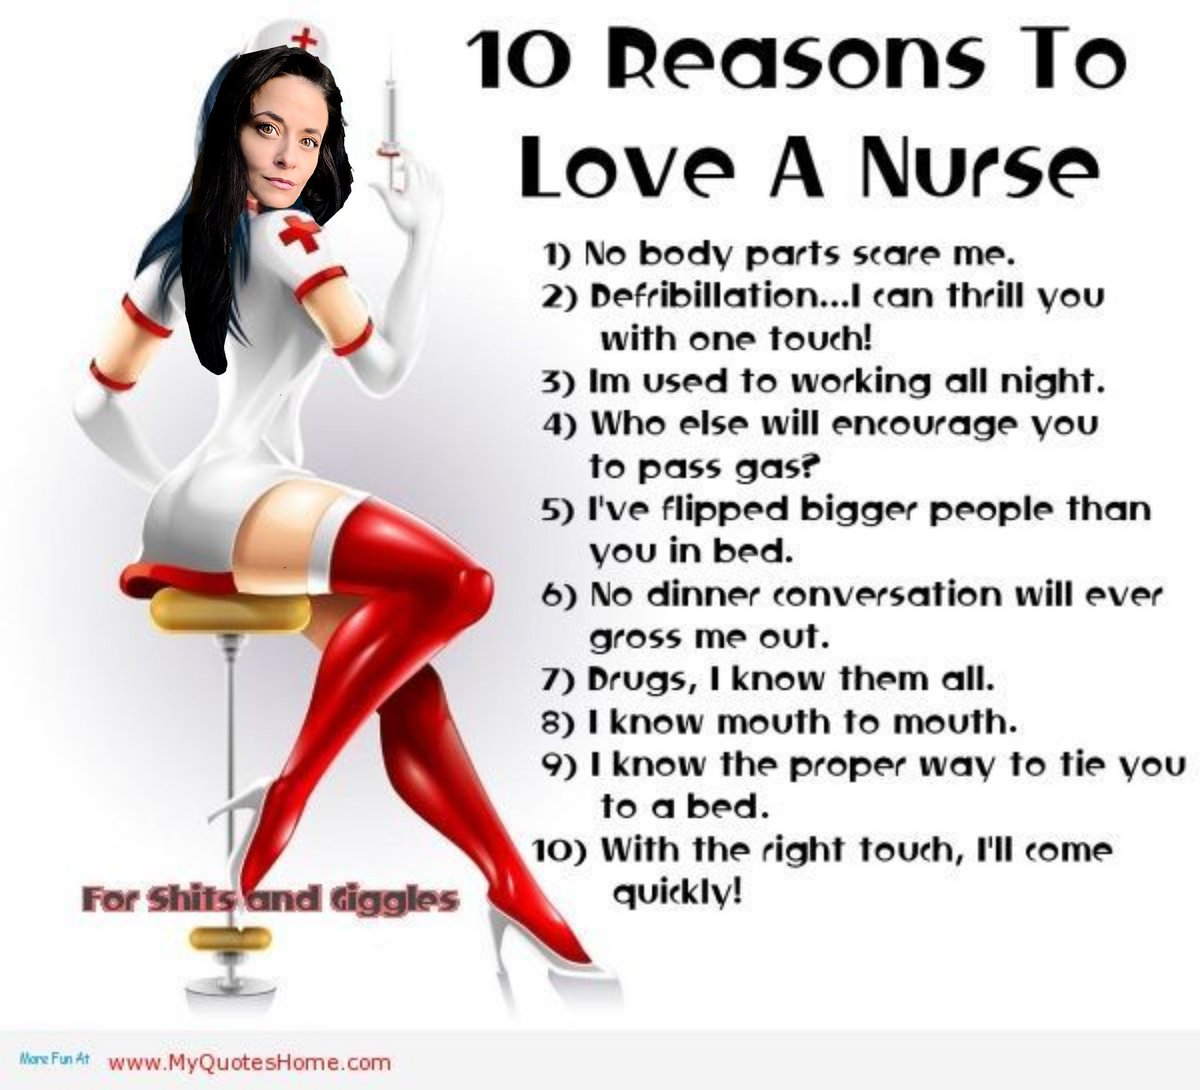 Can vouch 😏 

#RN #NurseTwitter #NurseLife